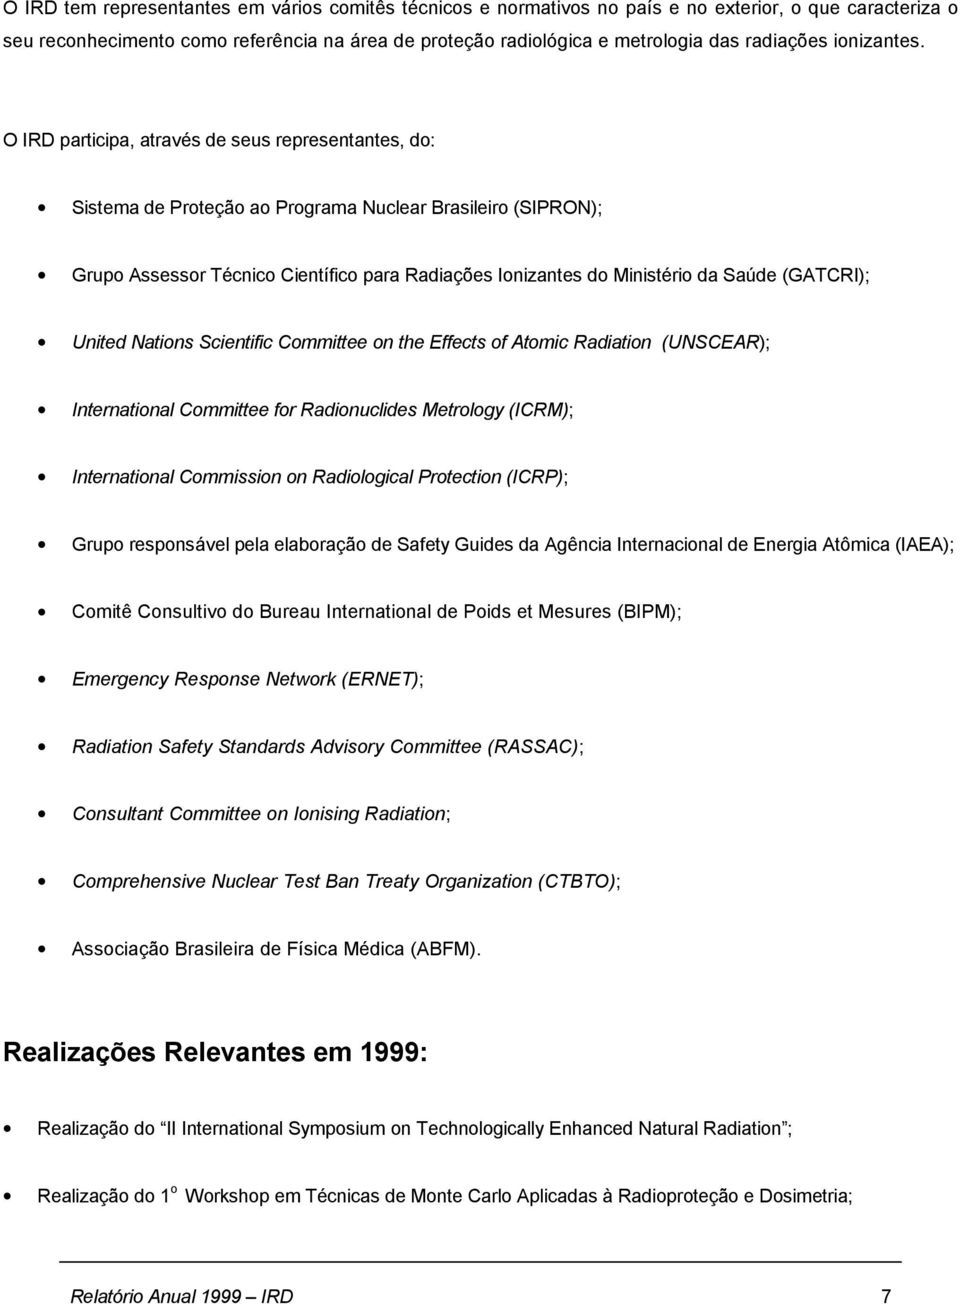 O IRD participa, através de seus representantes, do: Sistema de Proteção ao Programa Nuclear Brasileiro (SIPRON); Grupo Assessor Técnico Científico para Radiações Ionizantes do Ministério da Saúde